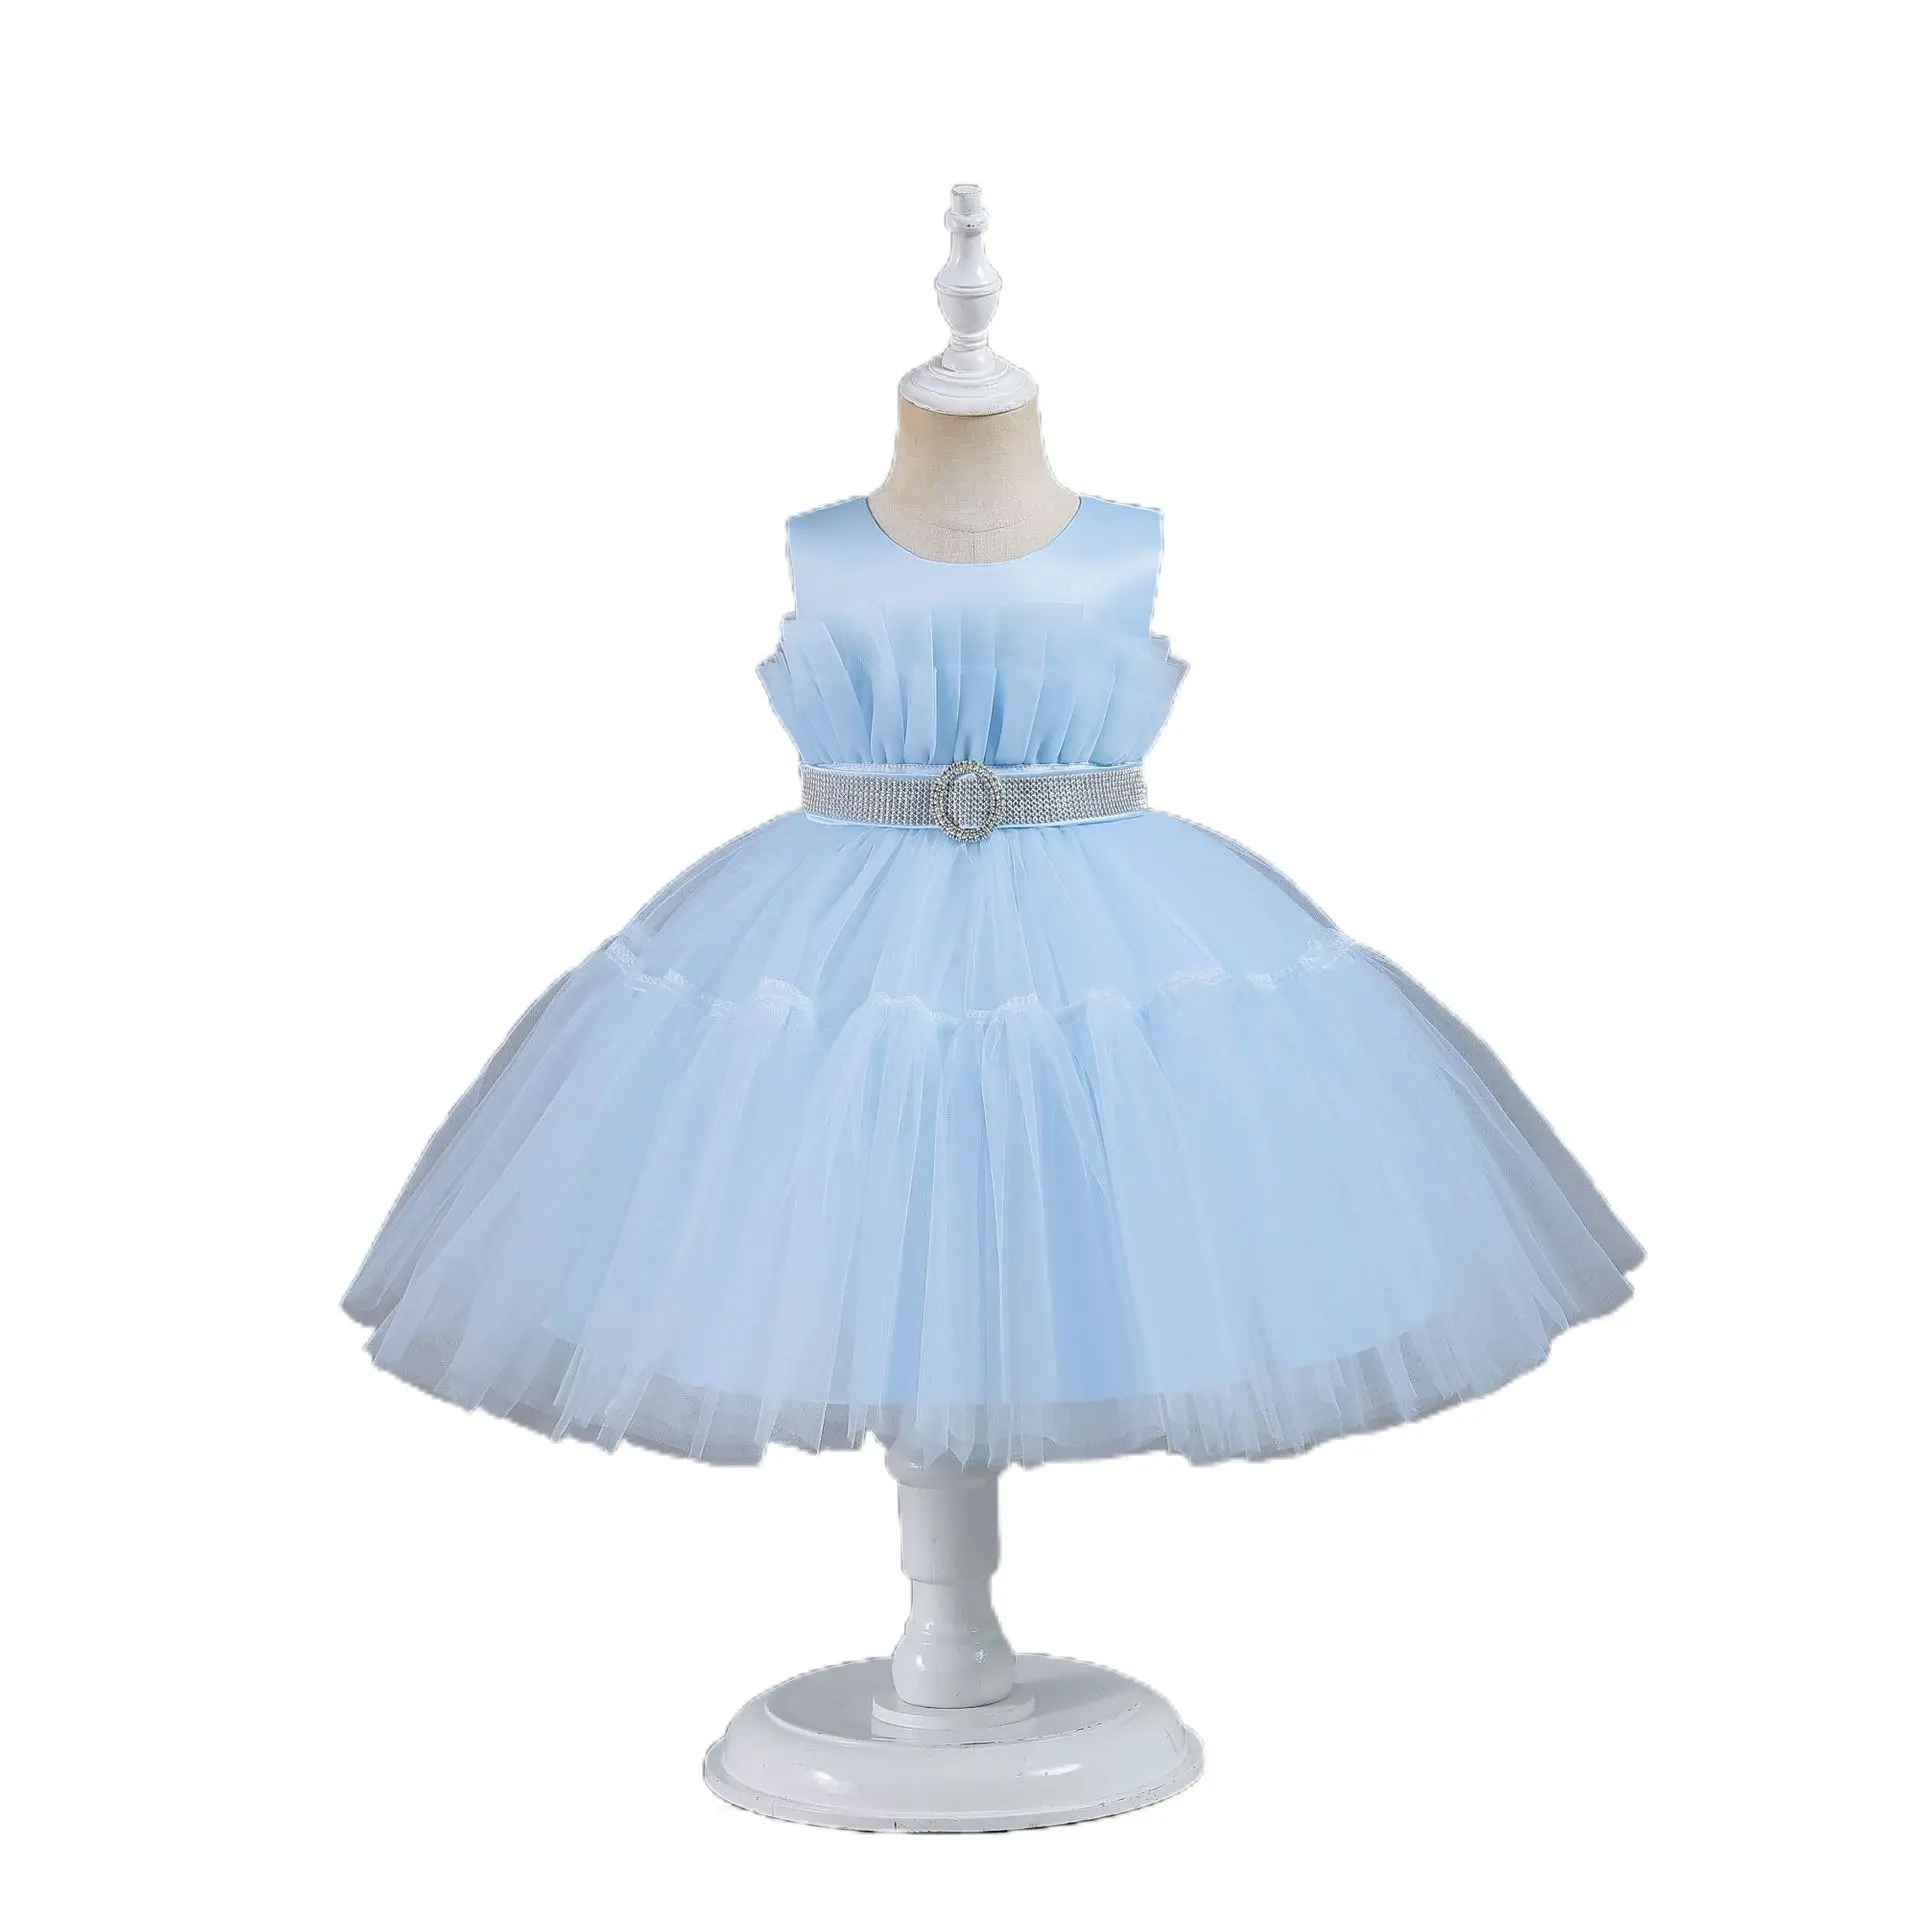 Yeni çocuk kabarık parti elbise çiçek kız için kız çocuk elbiseleri performans giyim prenses elbise